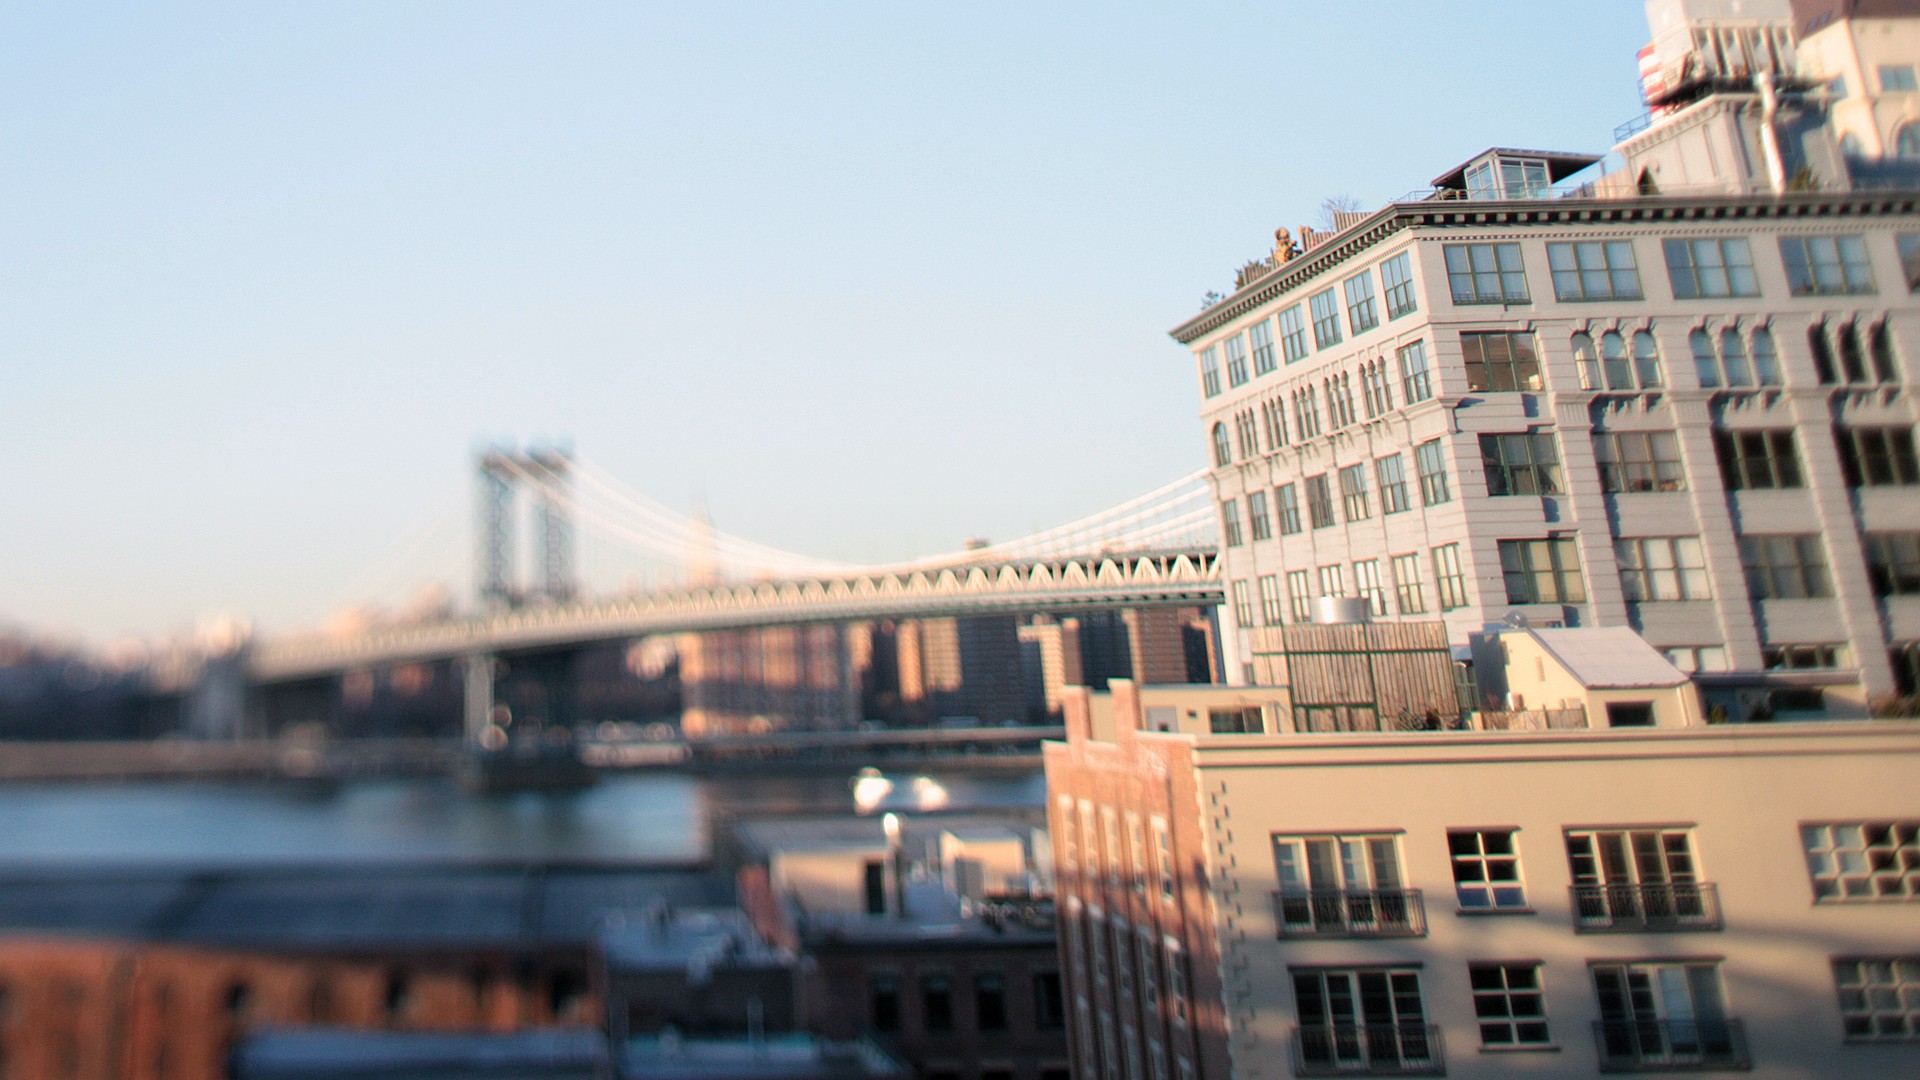 224408 скачать обои фотографии, наклон сдвиг, мост, город, манхэттенский мост, нью йорк - заставки и картинки бесплатно